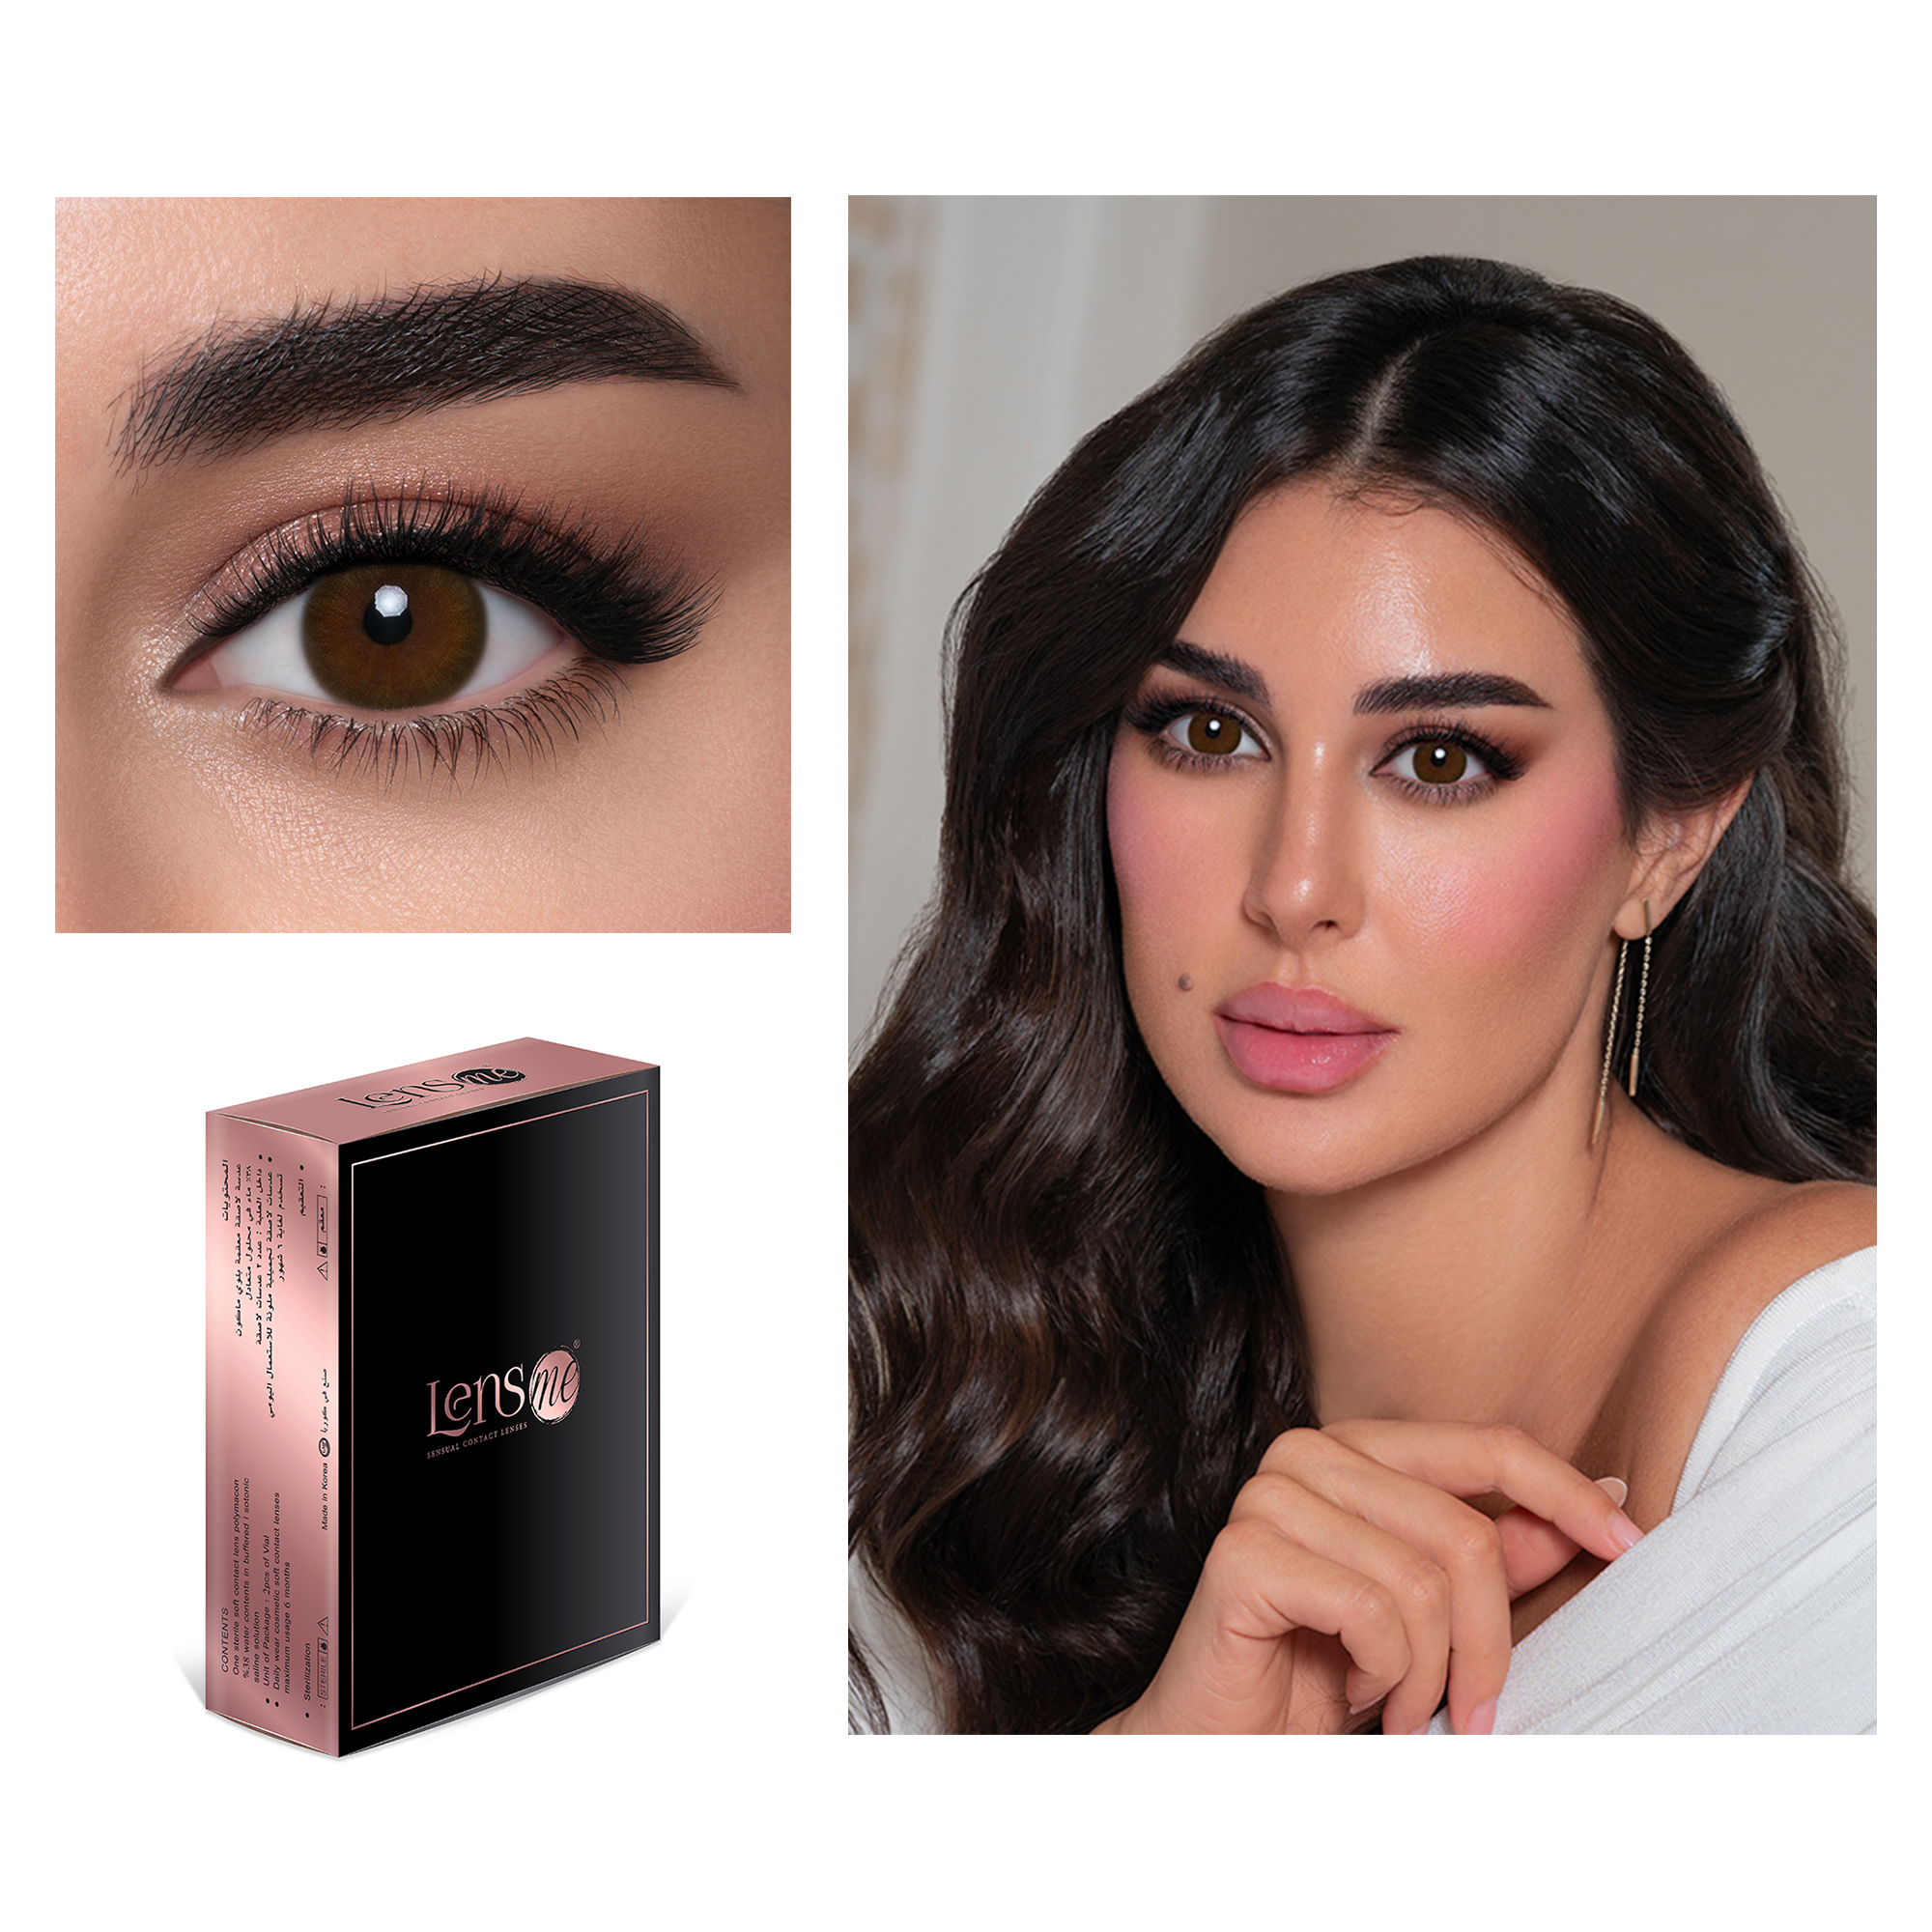 

Yasmine Sabri Monthly Color Contact Lenses, La_bella